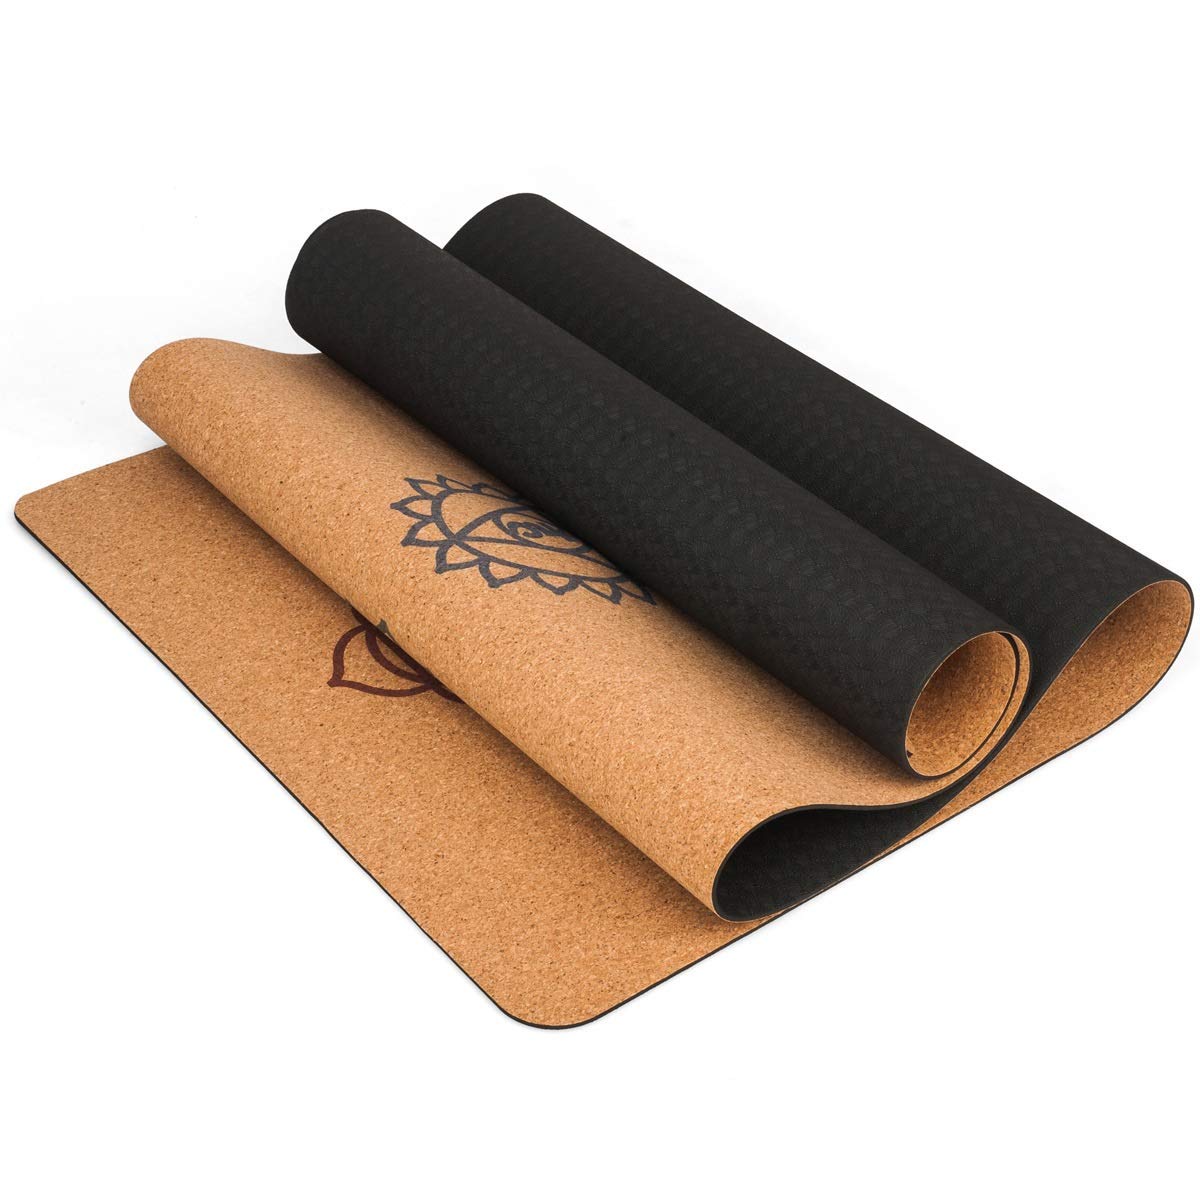 Anti-slip Gym Mat Natural Cork Rubber The Best Yoga Mat 